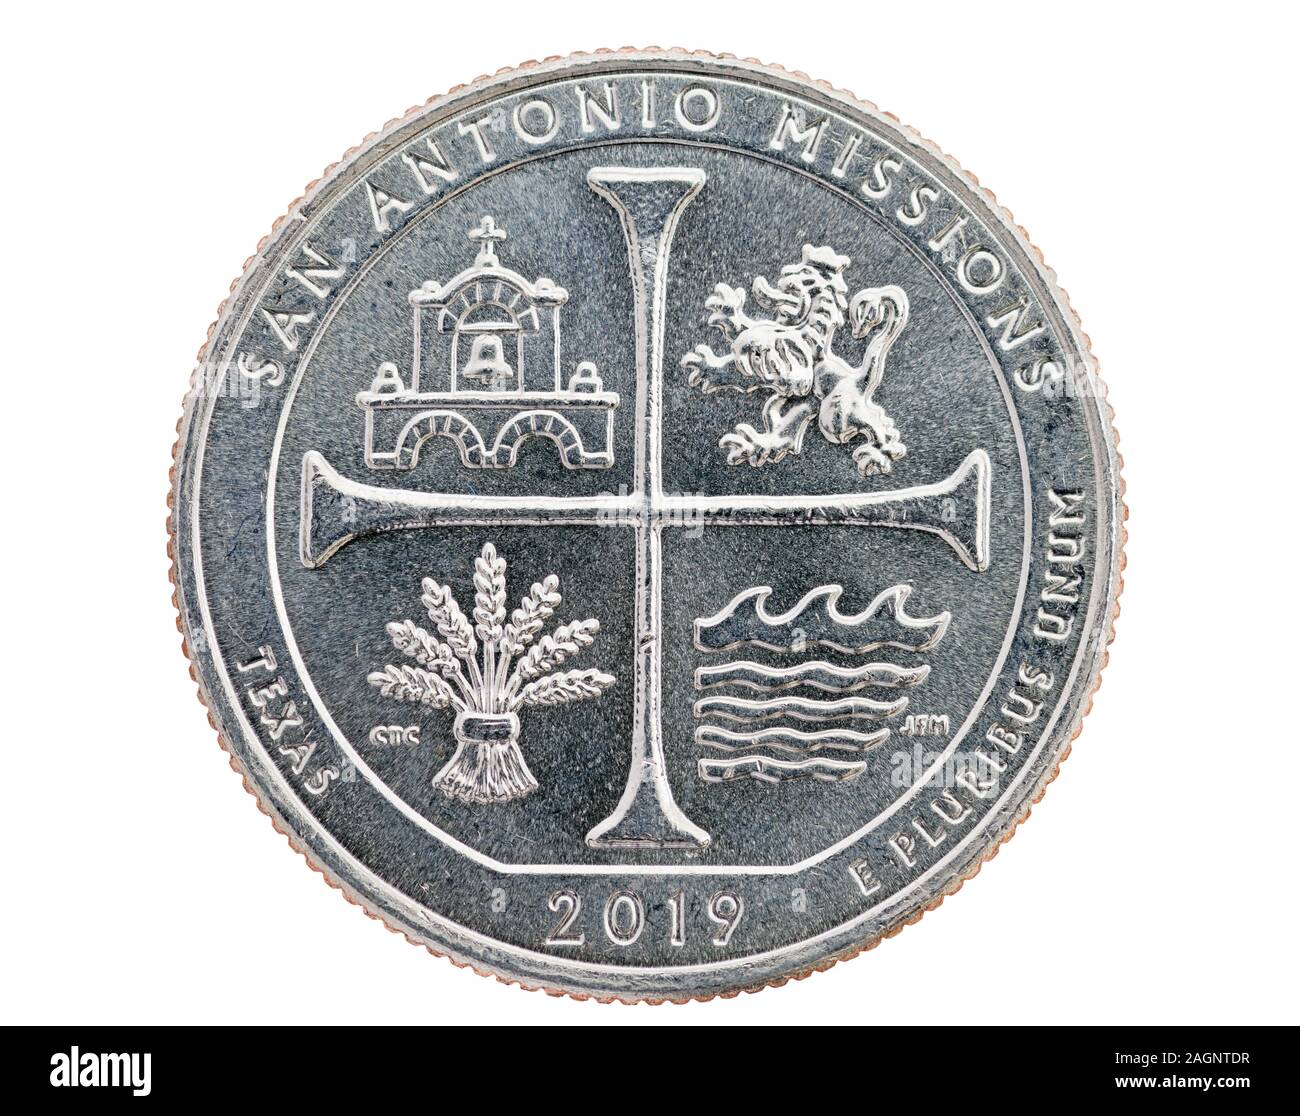 Missions de San Antonio au Texas trimestre commémorative coin isolated on white Banque D'Images